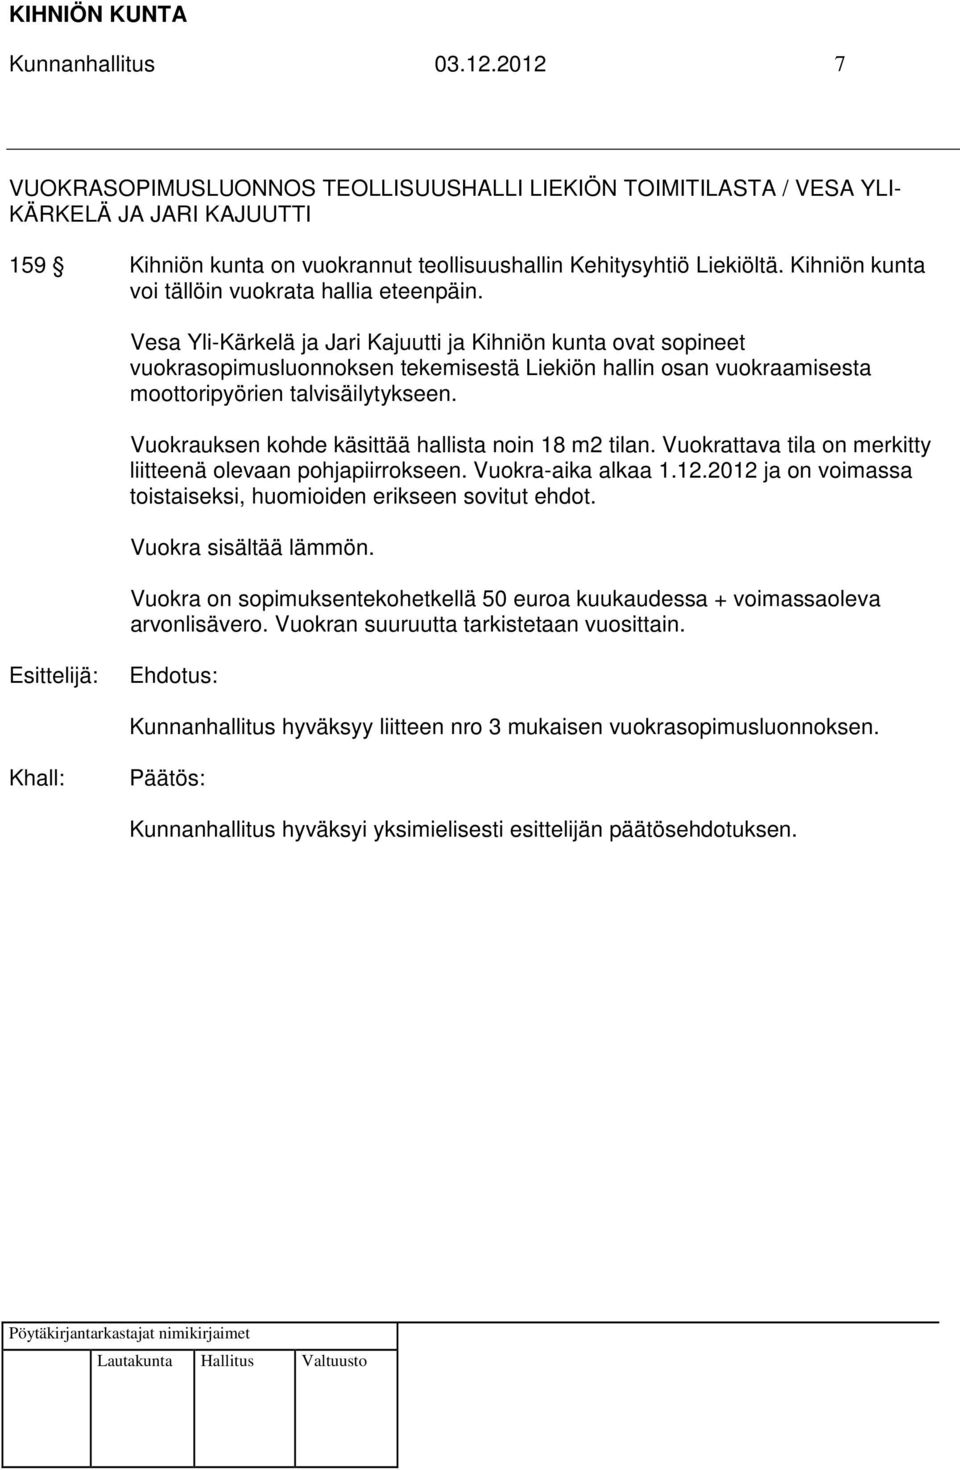 Vesa Yli-Kärkelä ja Jari Kajuutti ja Kihniön kunta ovat sopineet vuokrasopimusluonnoksen tekemisestä Liekiön hallin osan vuokraamisesta moottoripyörien talvisäilytykseen.